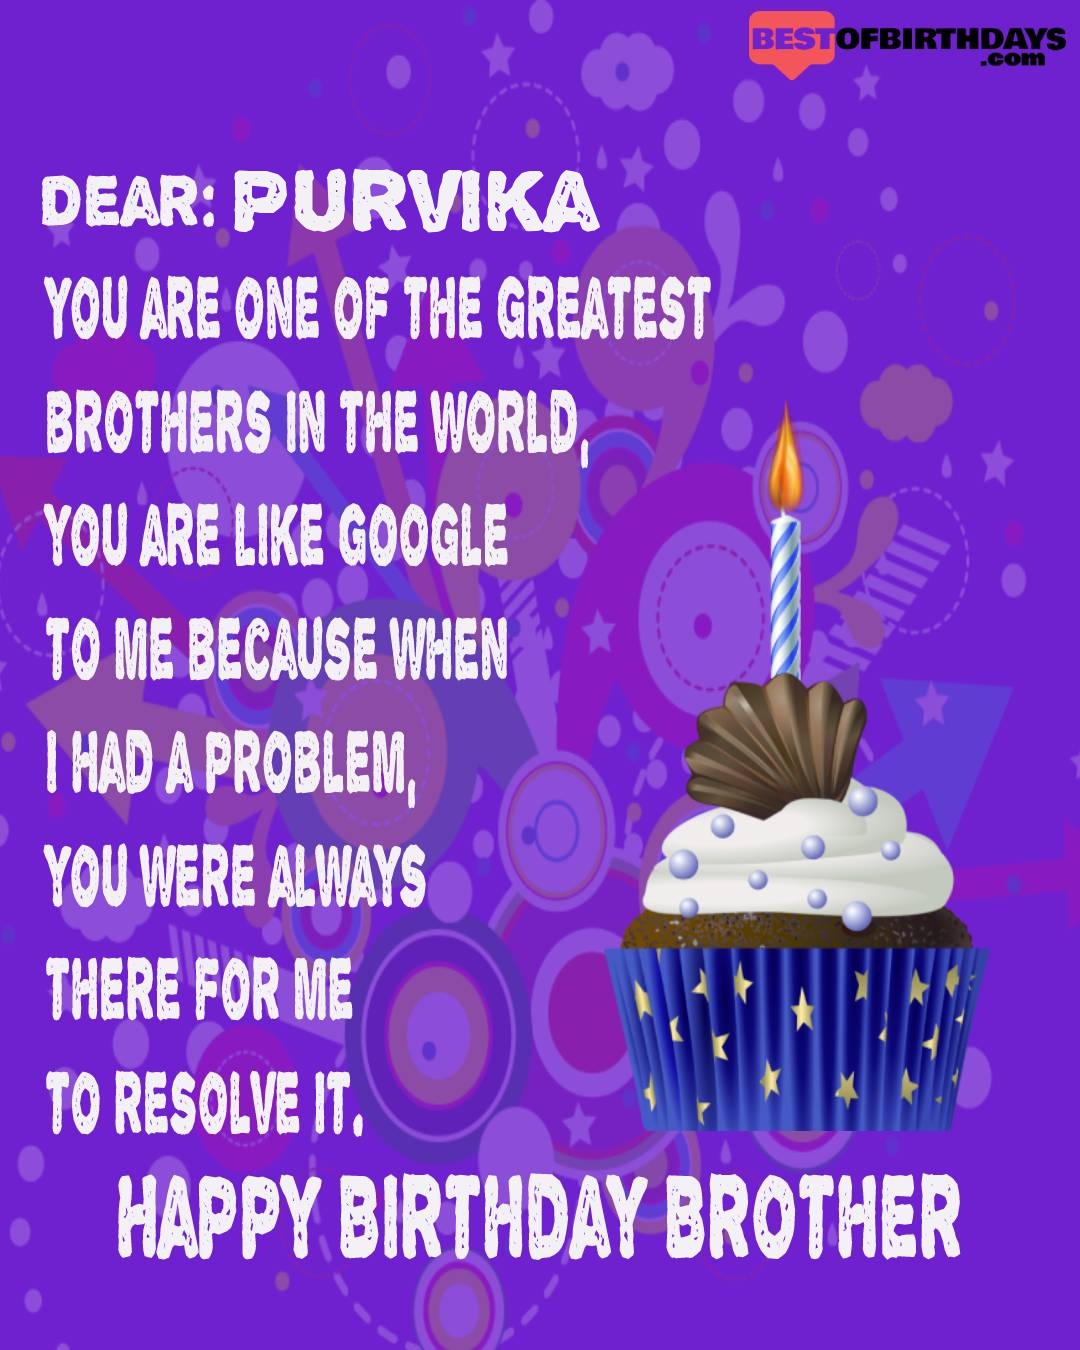 Happy birthday purvika bhai brother bro